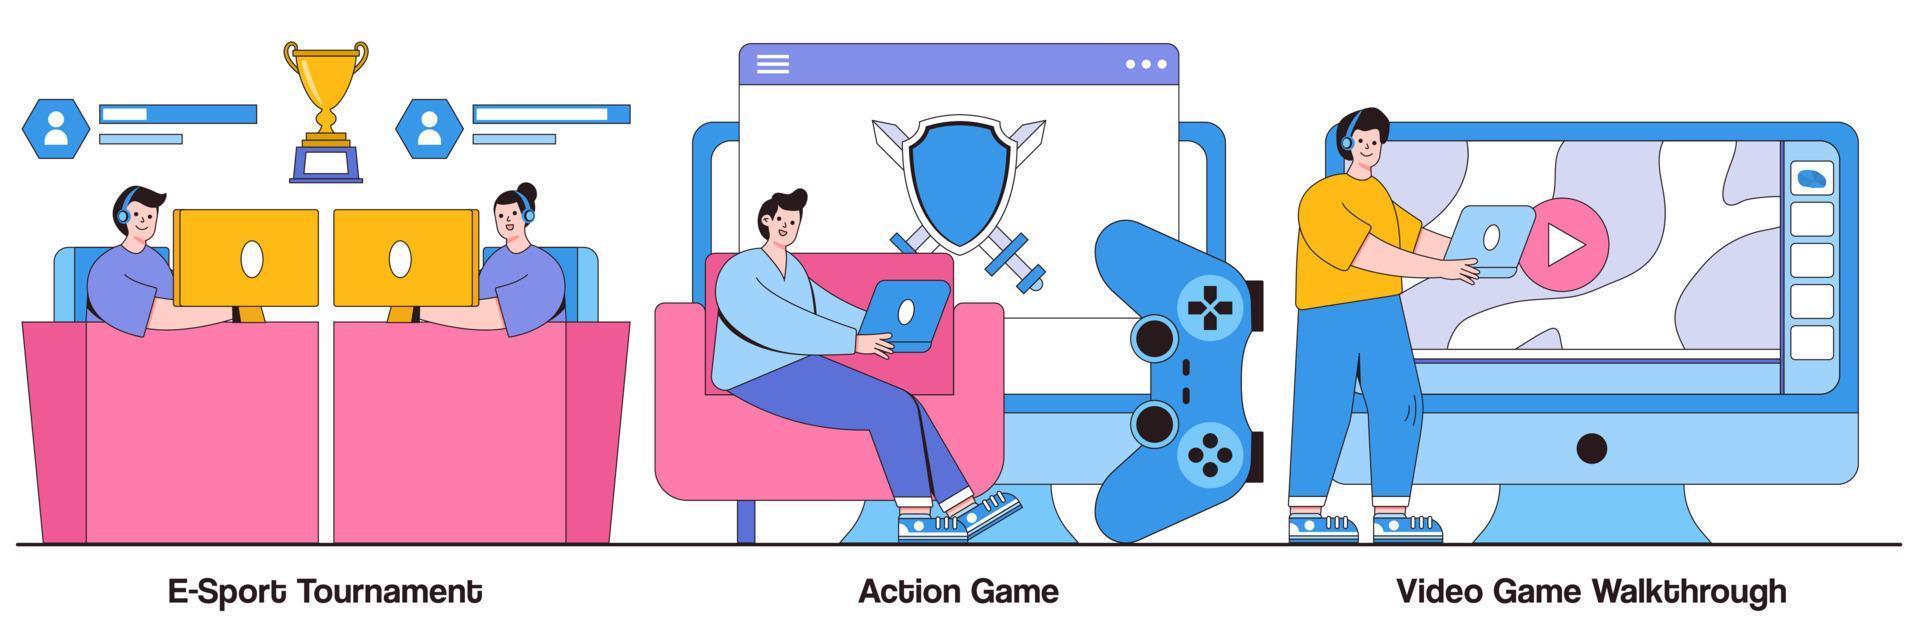 tournoi e-sport, jeu d'action, procédure pas à pas de jeu vidéo avec pack d'illustrations de personnages vecteur